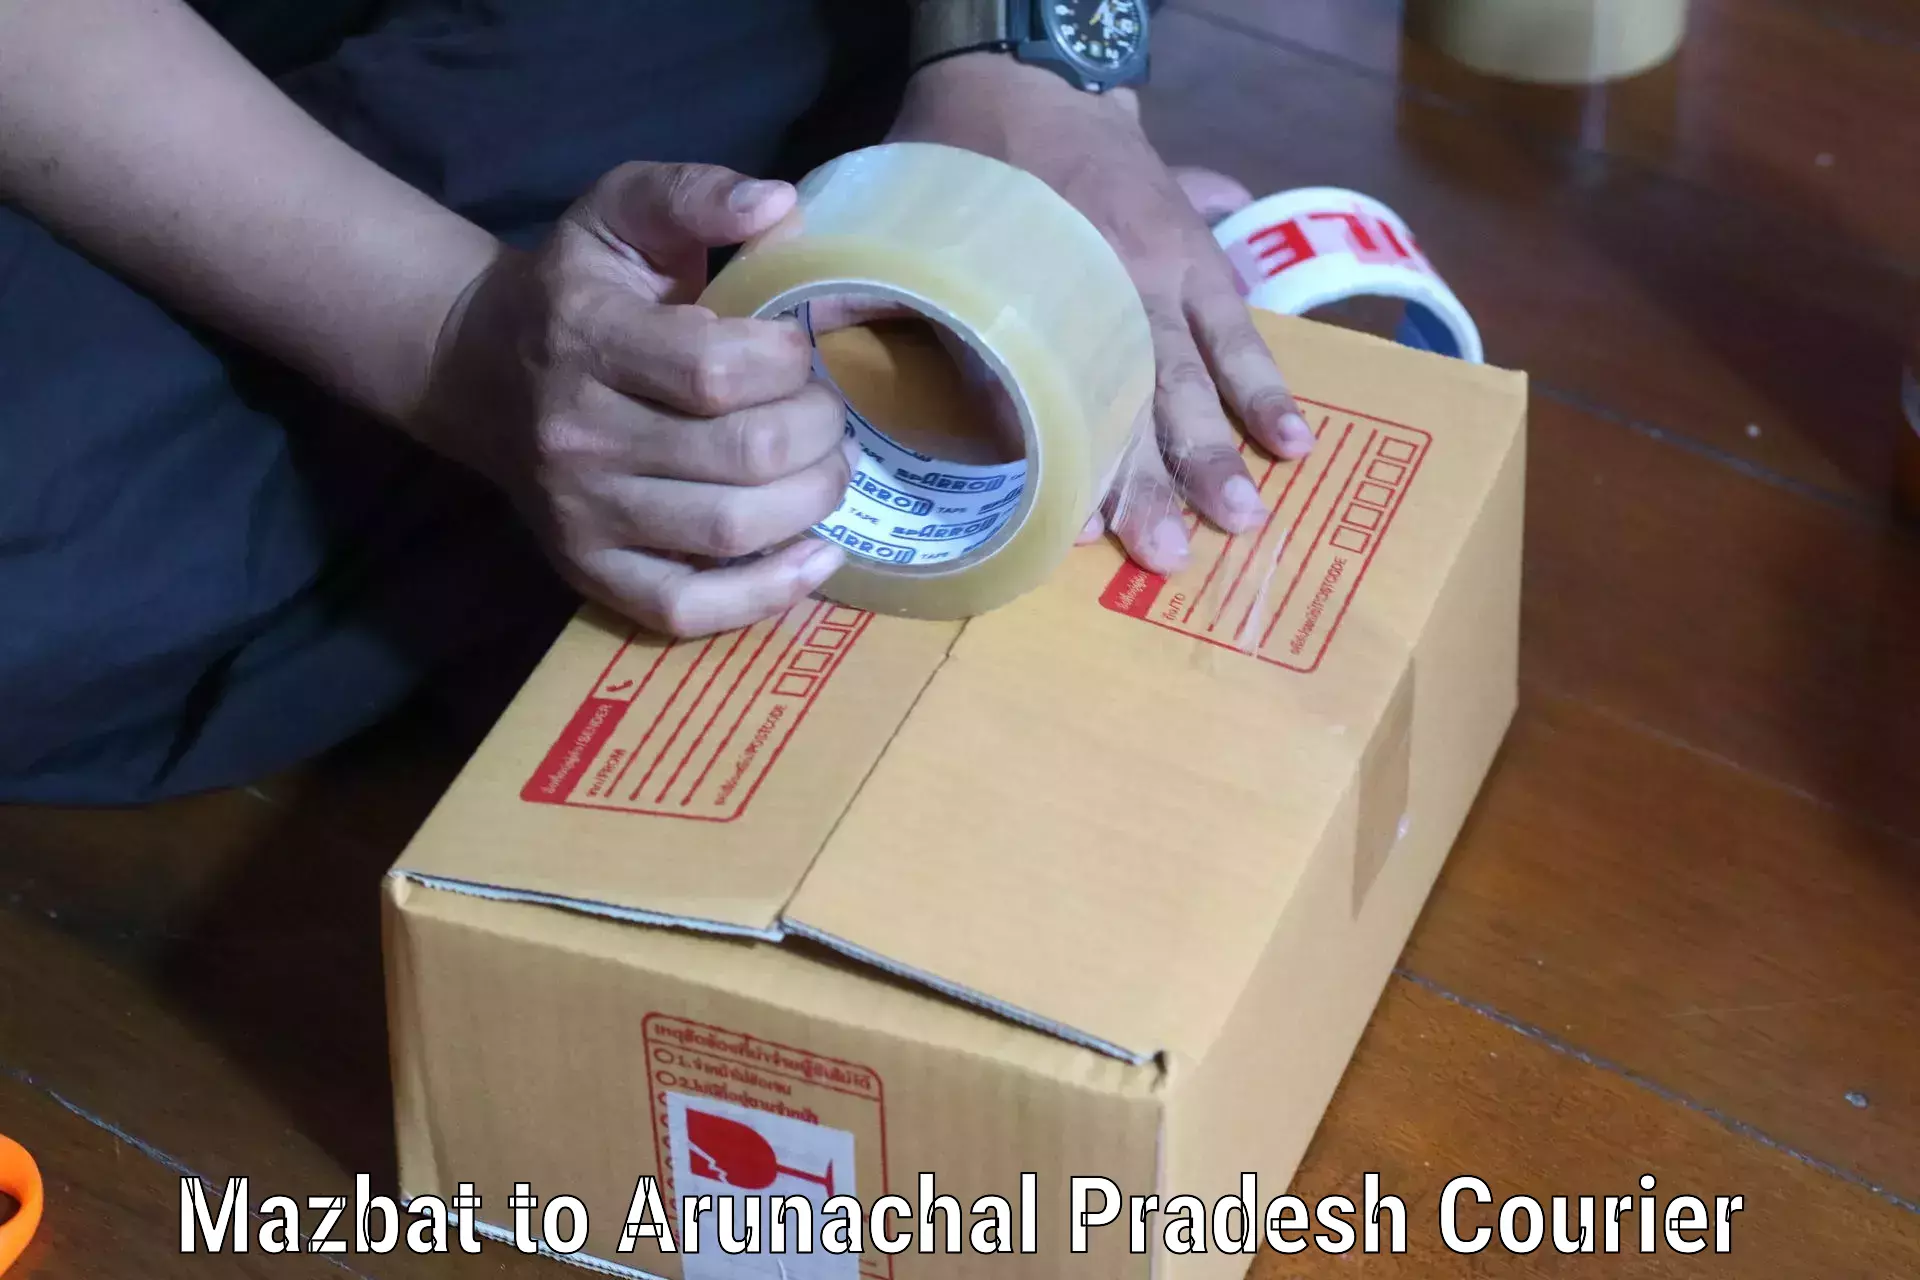 Large package courier Mazbat to Arunachal Pradesh